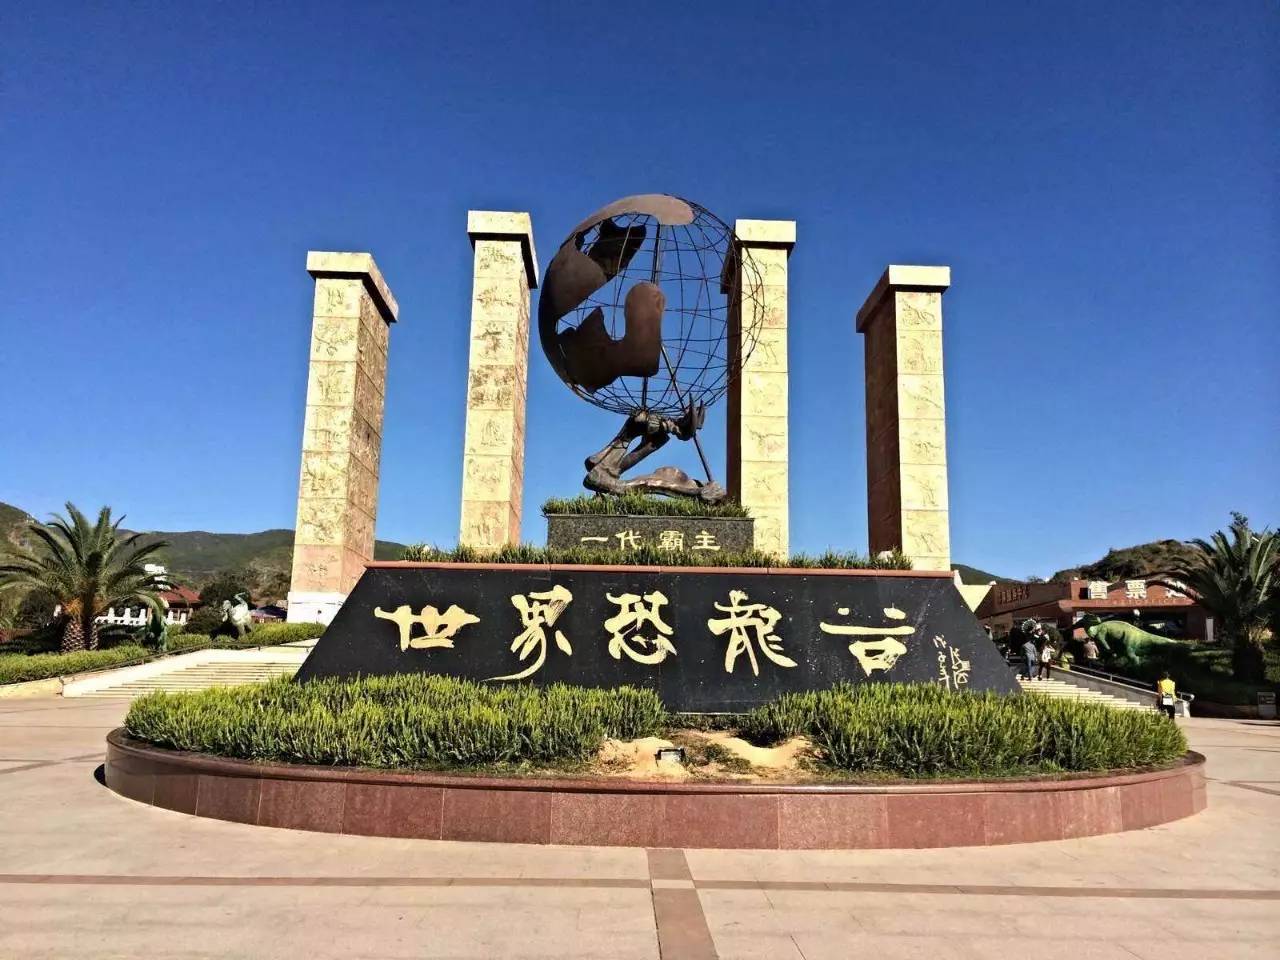 首届云南文旅融合提名景区之世界恐龙谷 世界恐龙谷位于楚雄州禄丰县